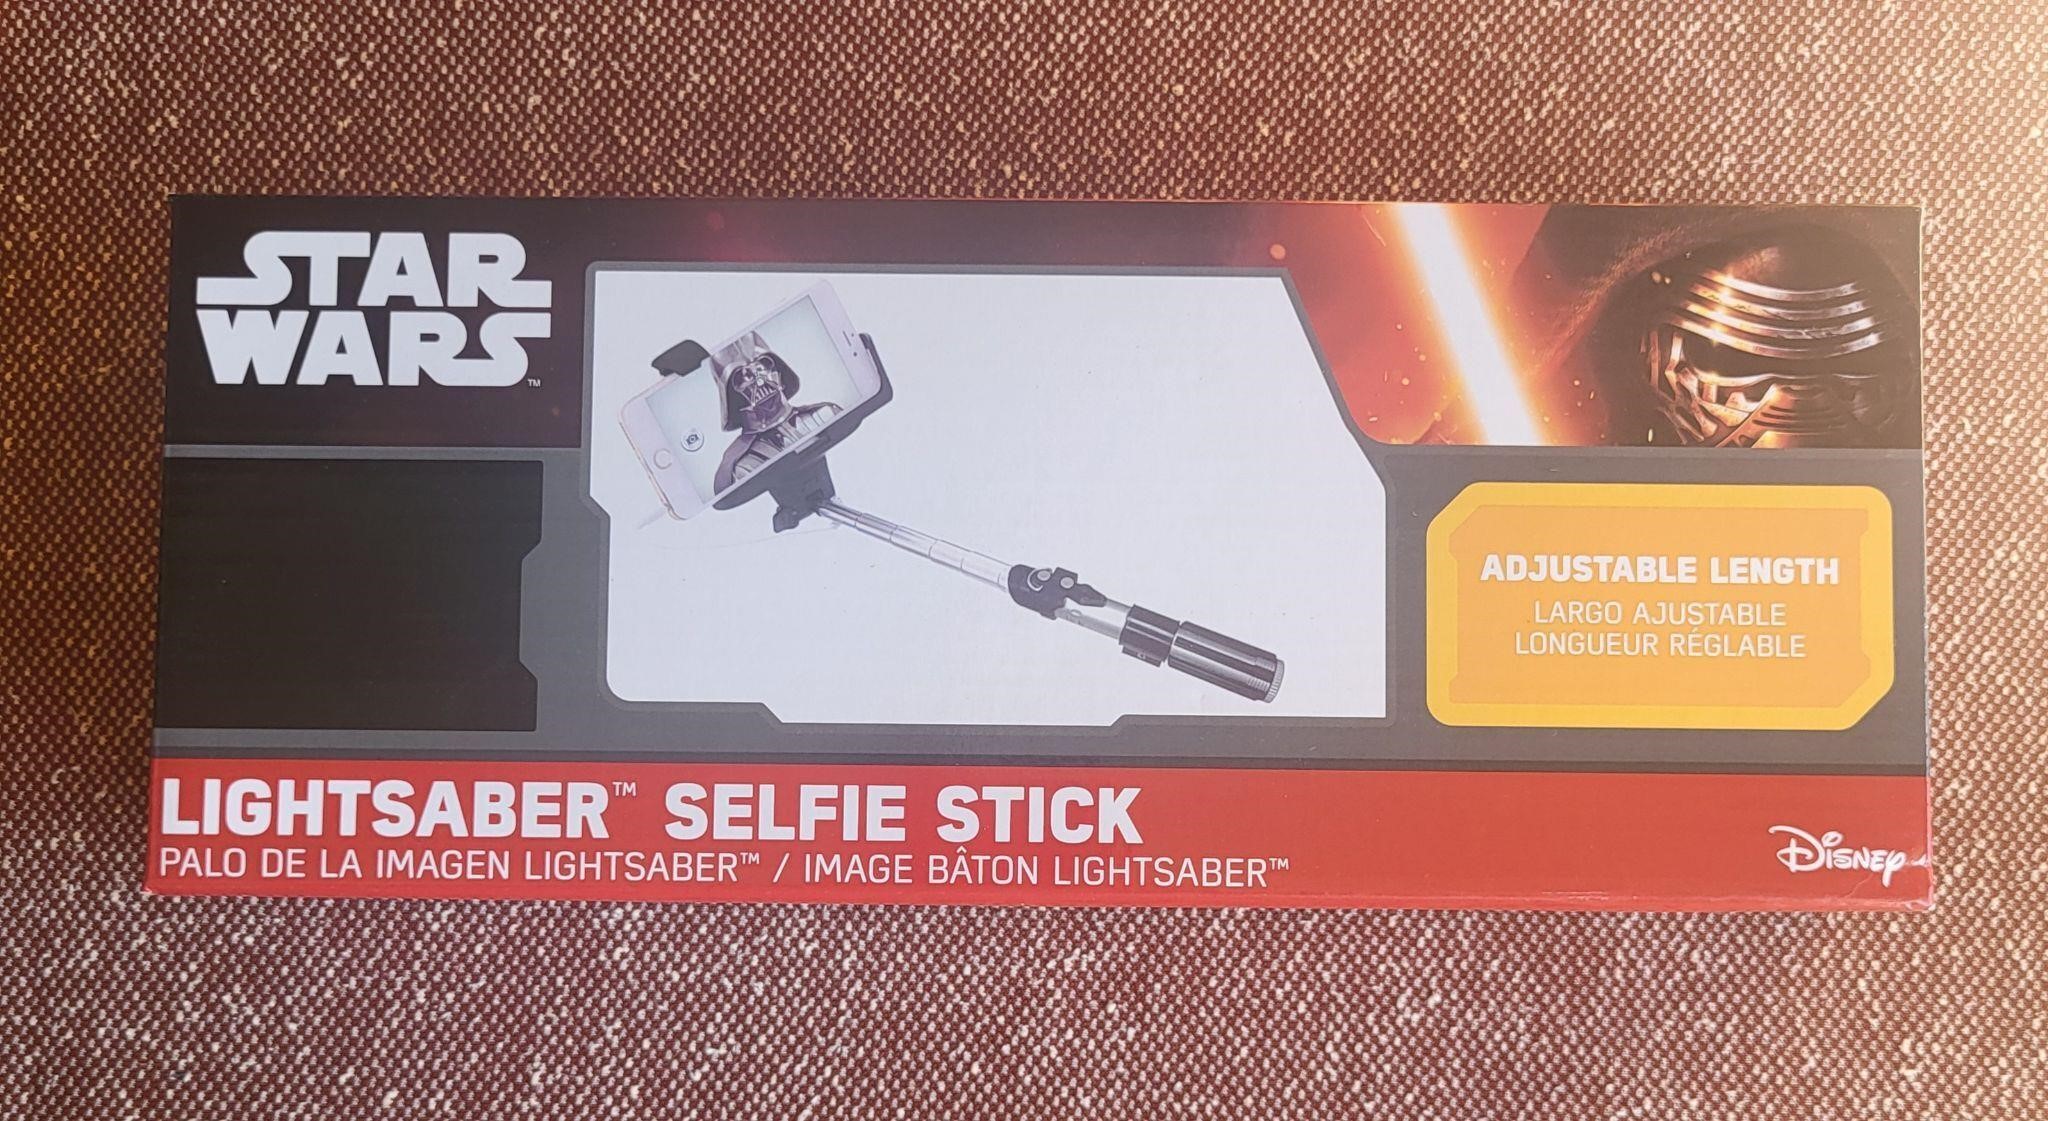 Star Wars Lighht Saber Selfie Stick